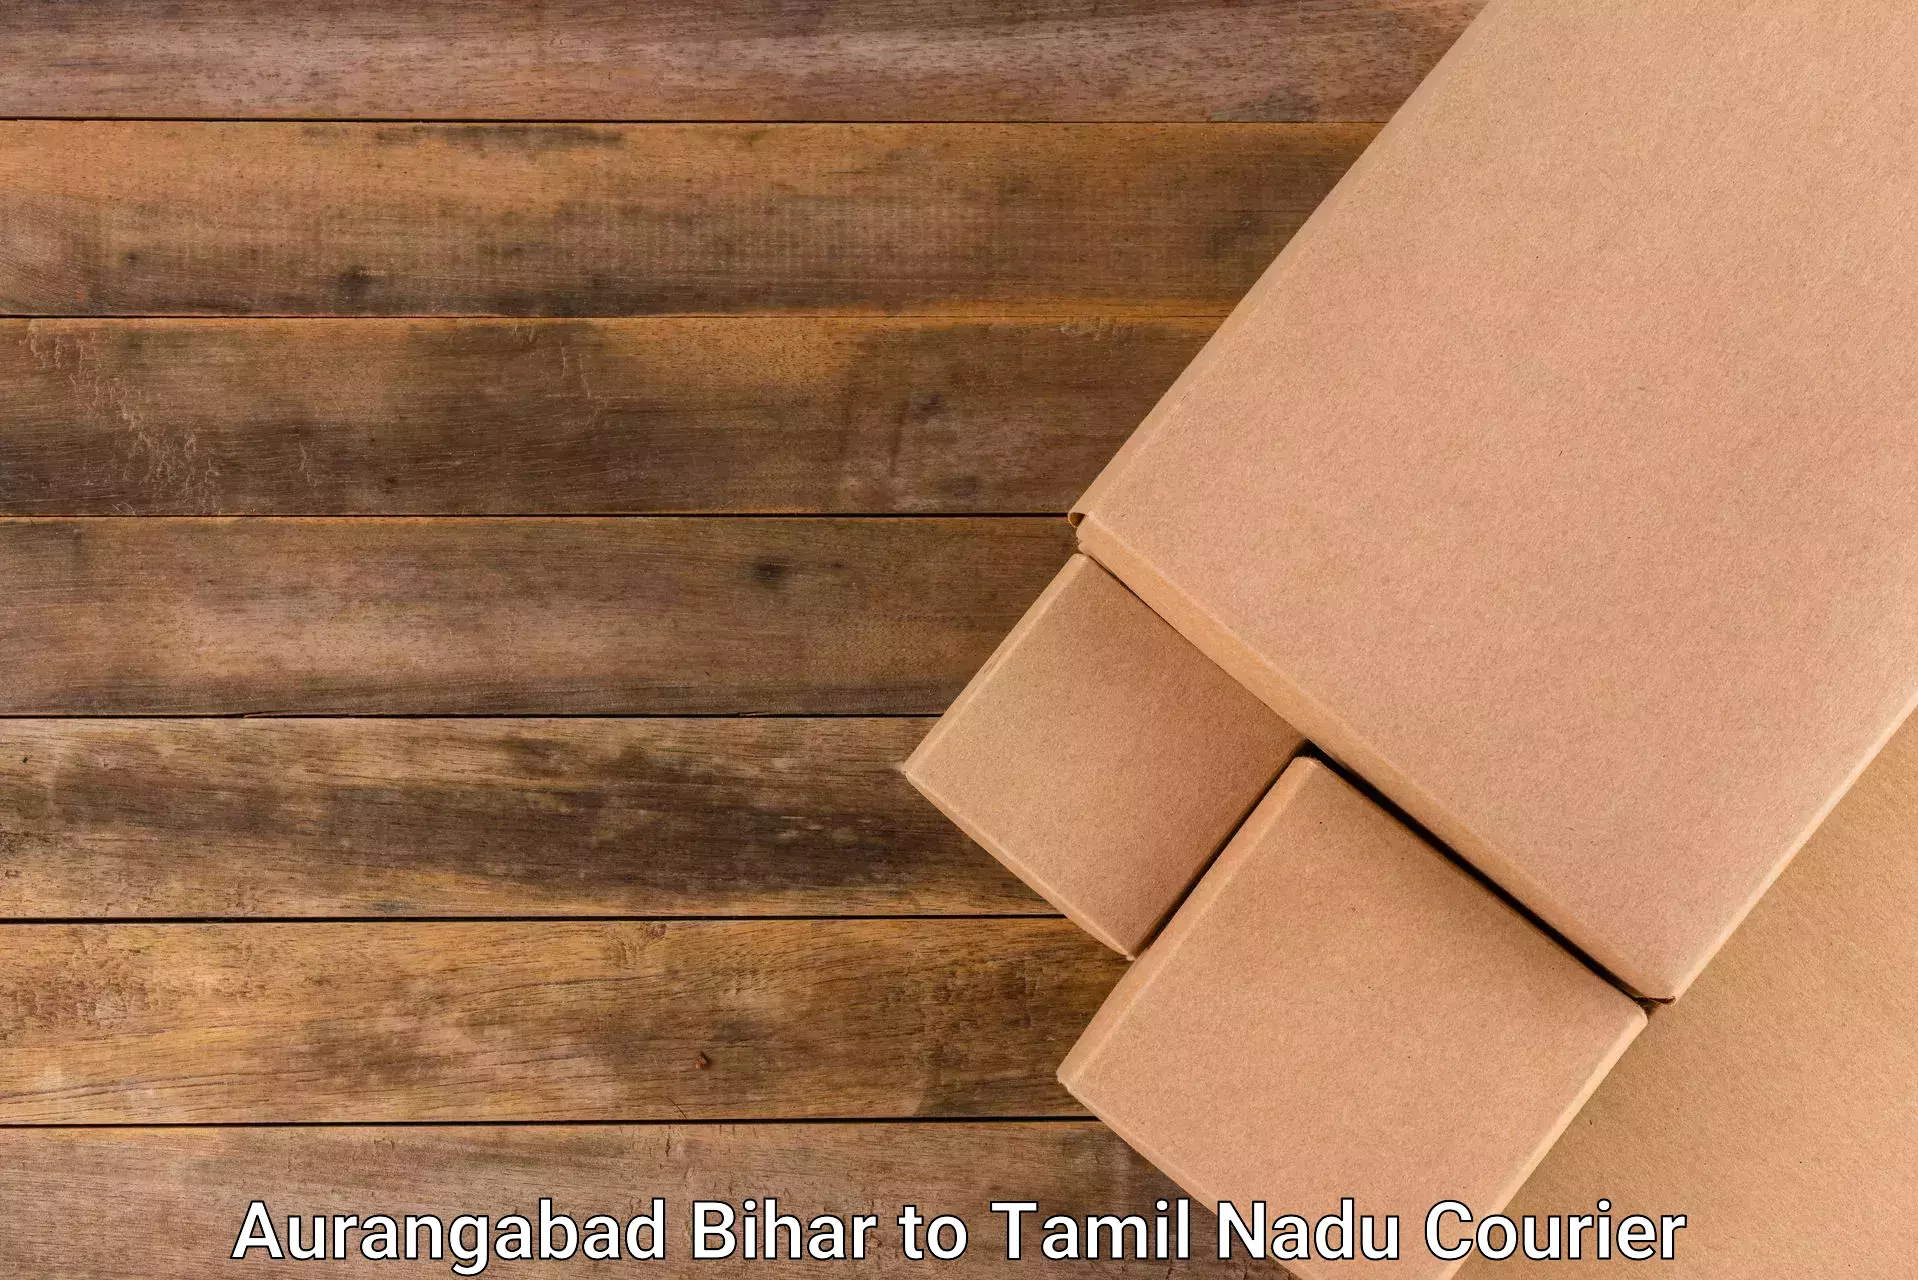 Cash on delivery service Aurangabad Bihar to Tamil Nadu